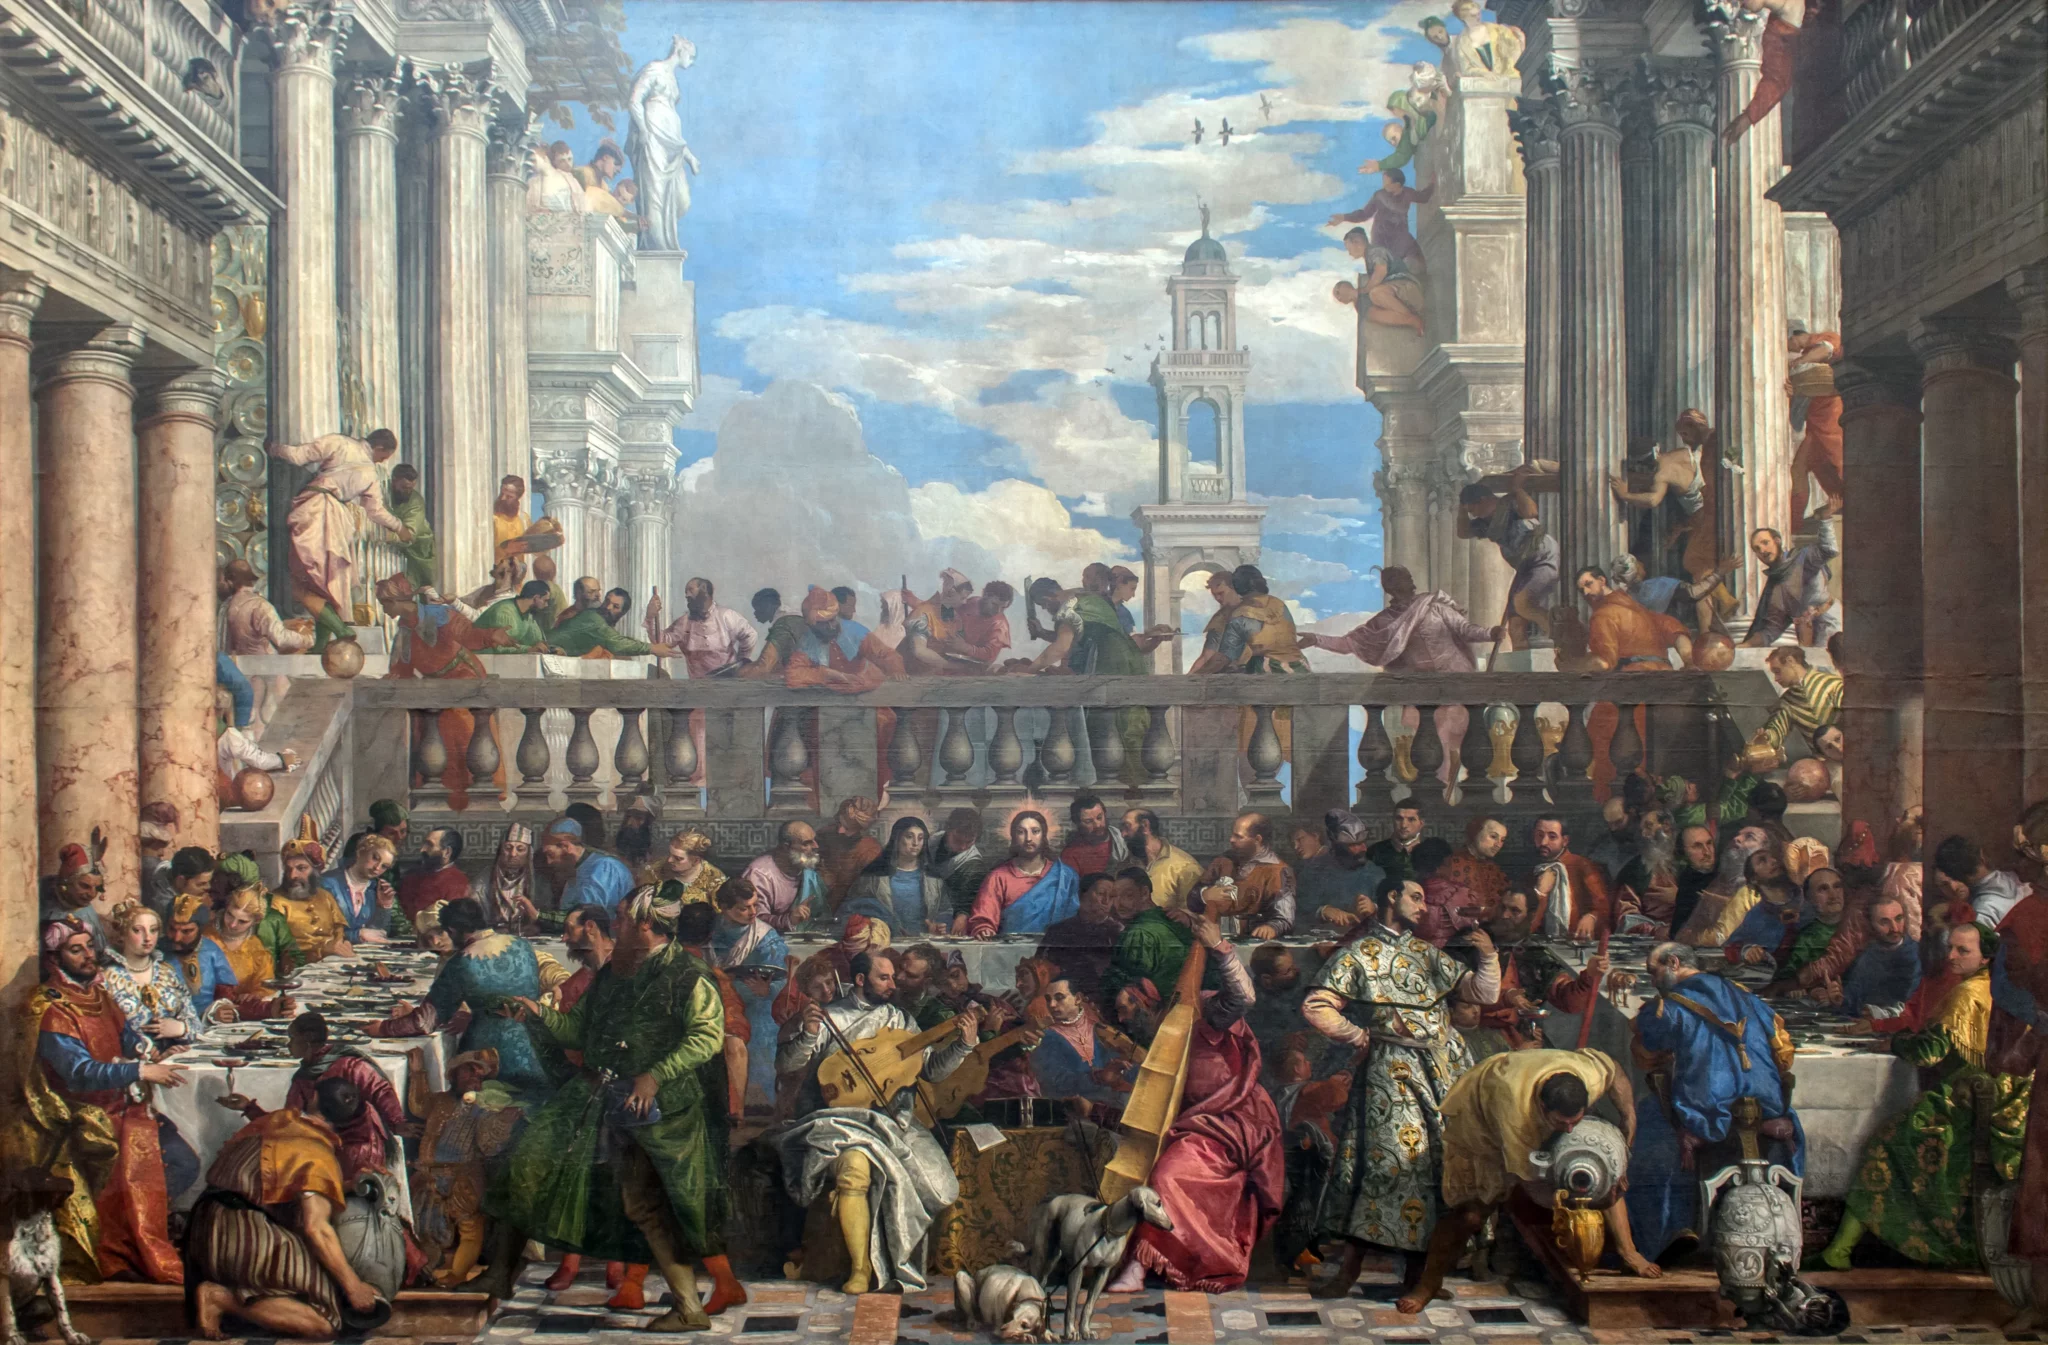 Les noces de Cana tableau peint par Véronèse en 1562 - 1563